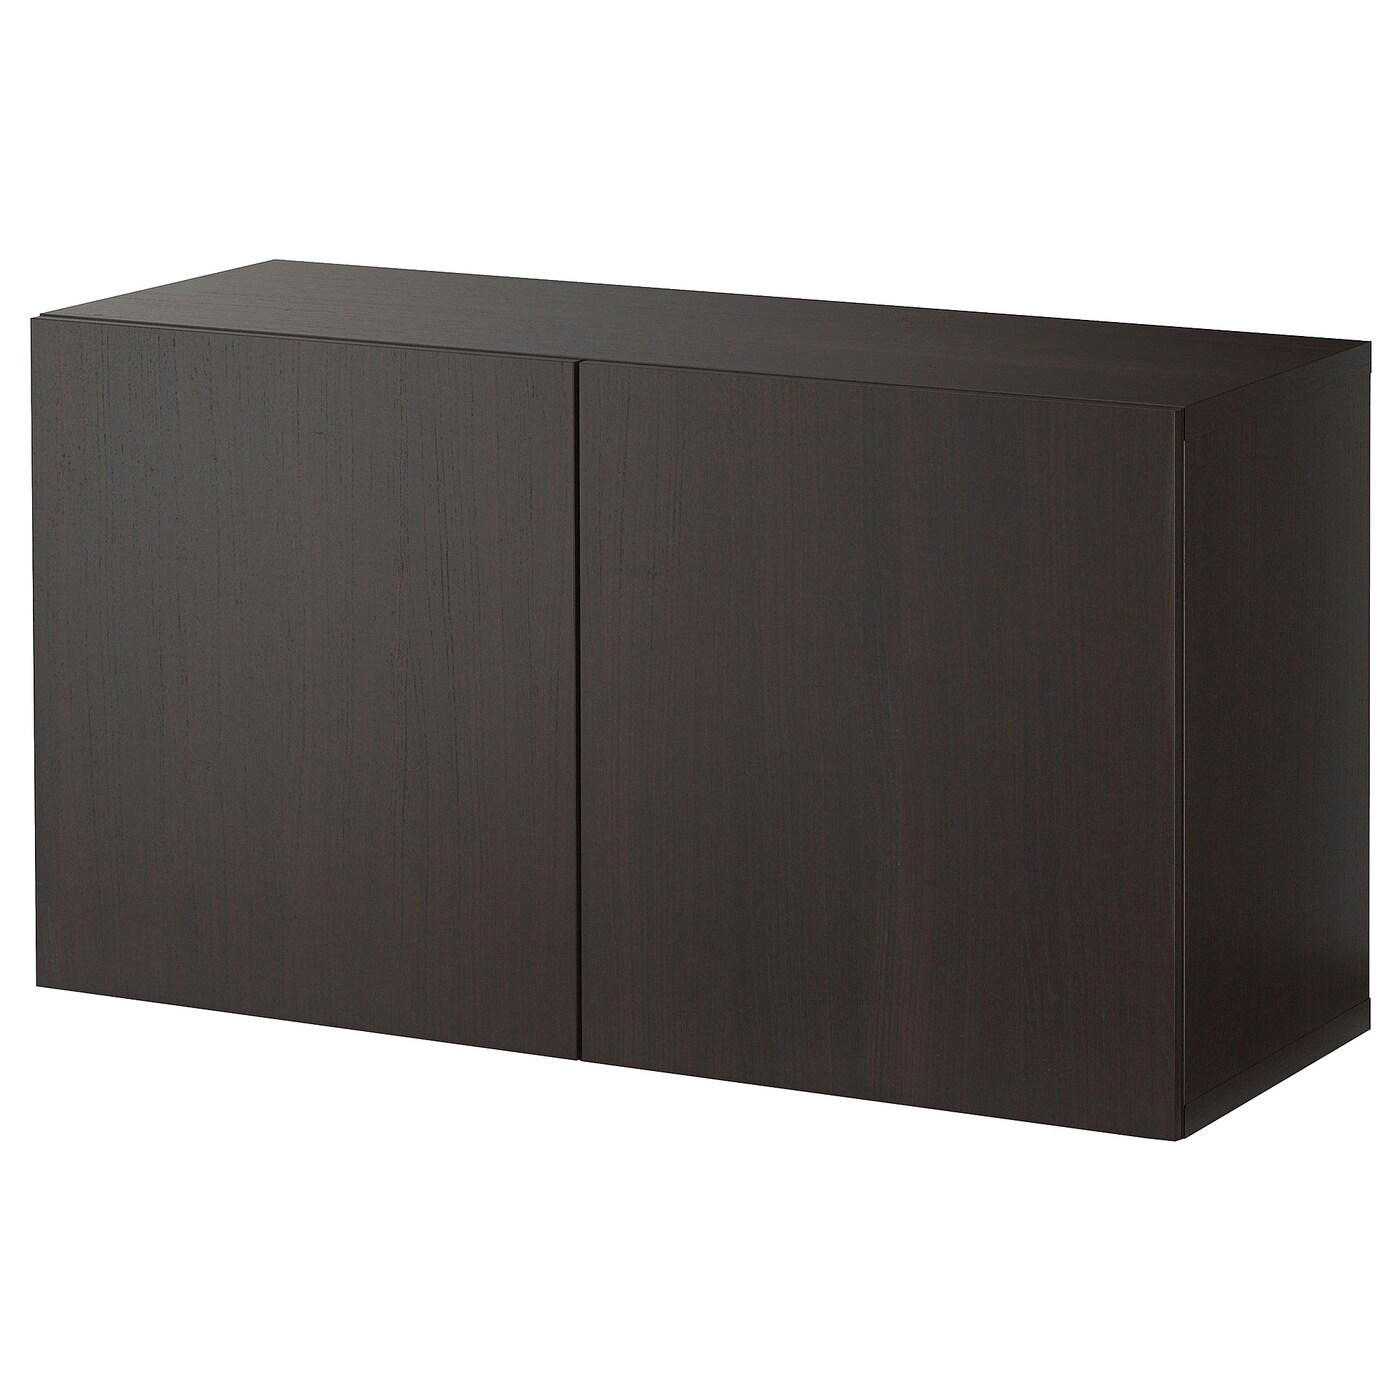 Навесной шкаф - IKEA BESTÅ/BESTA, 120x42x64 см, коричневый, БЕСТО ИКЕА